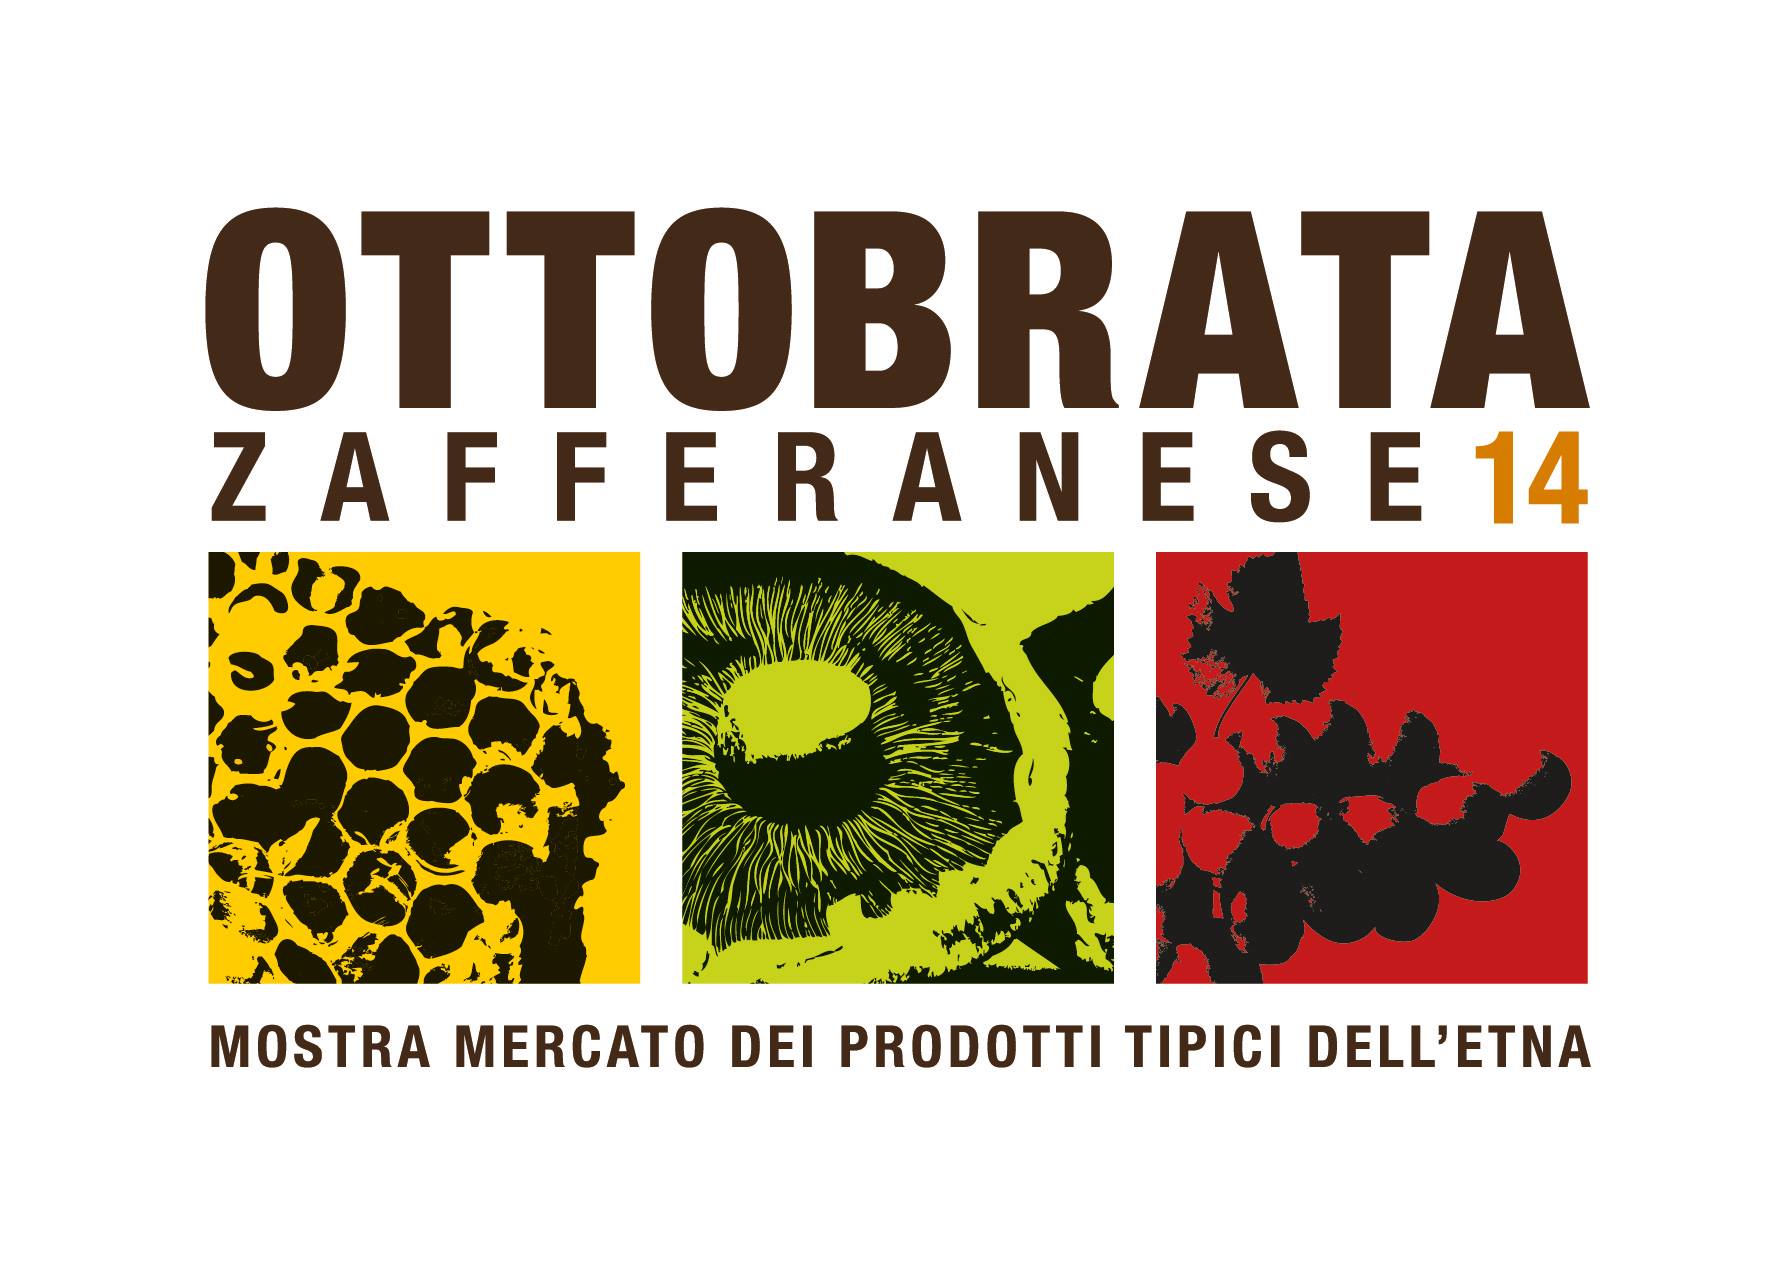 Ottobrata Zafferanese 2014